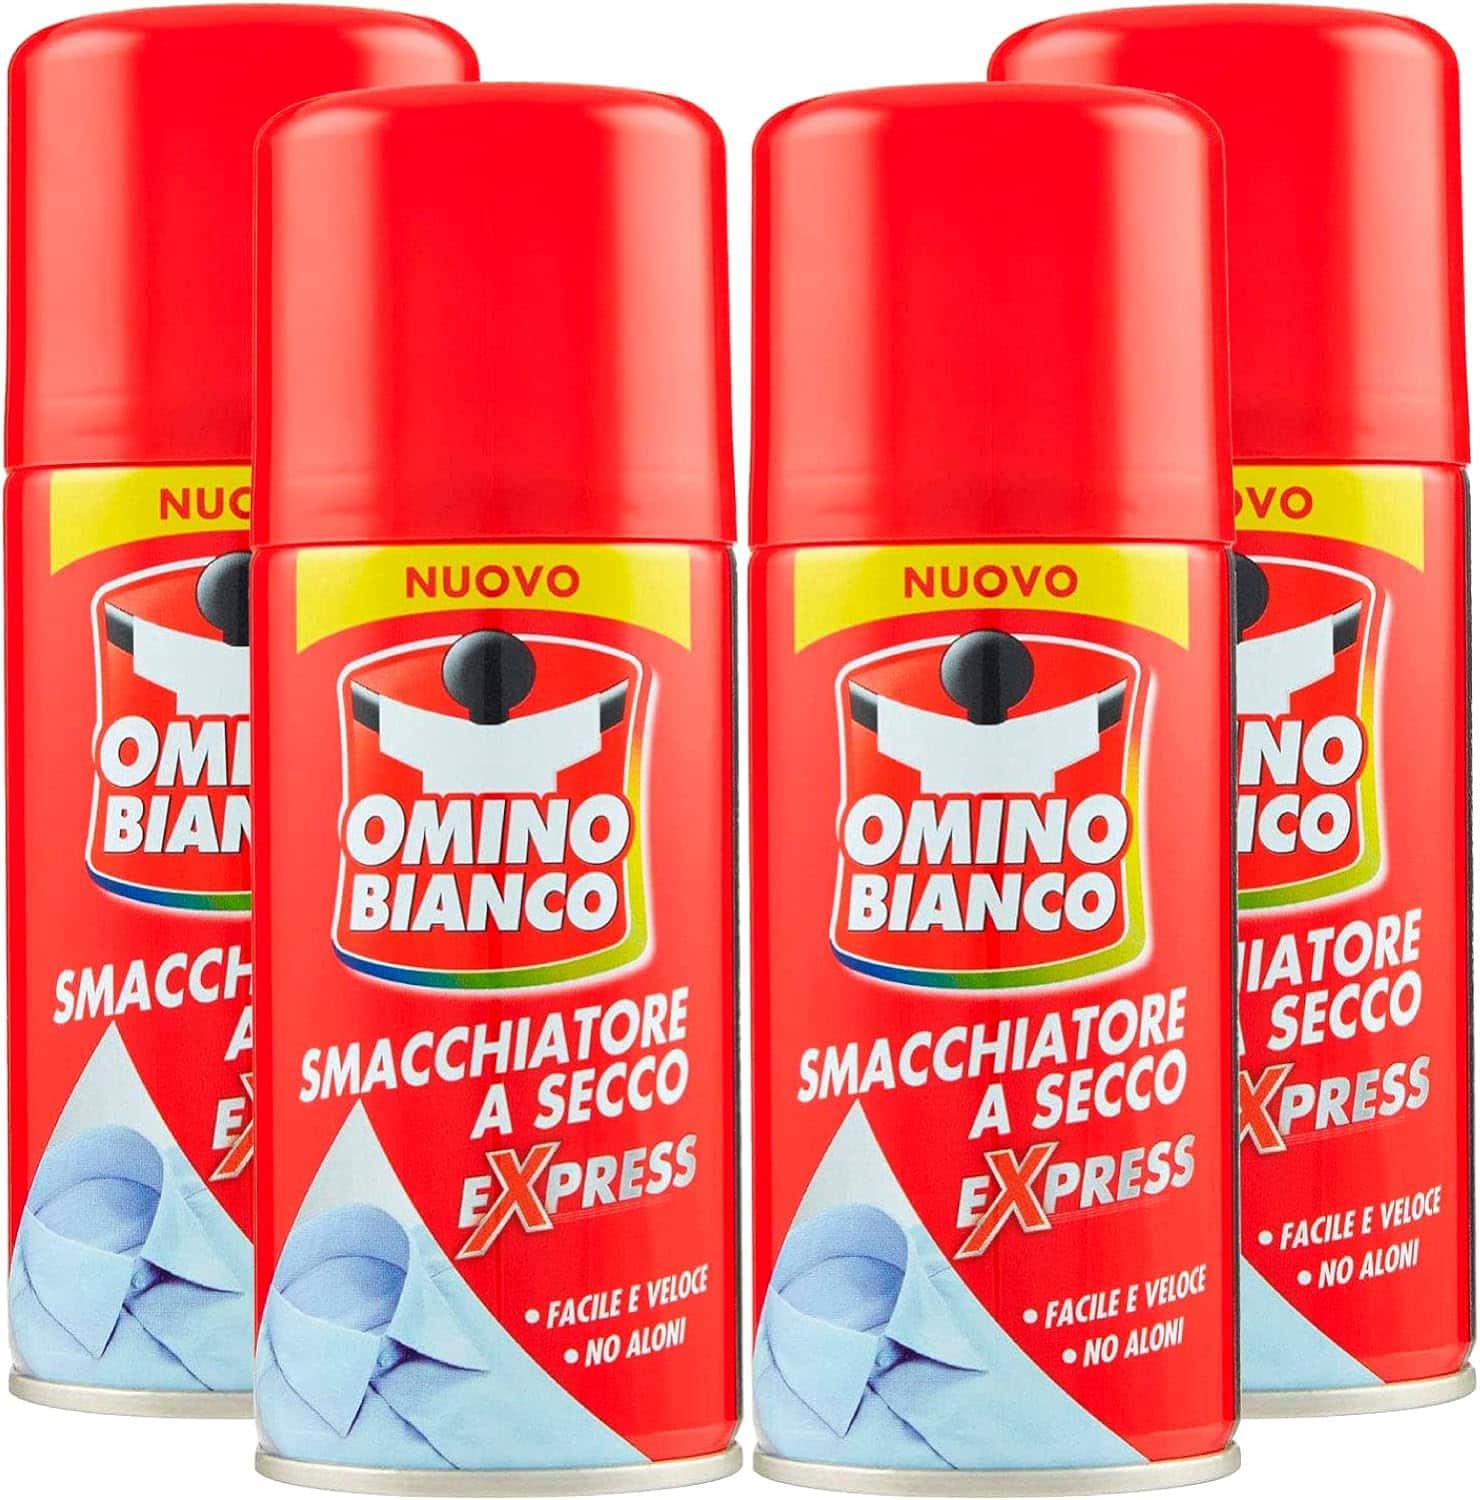 4 Flaconi Omino Bianco 125ml Smacchiatore Spray a Secco Express Senza Aloni.